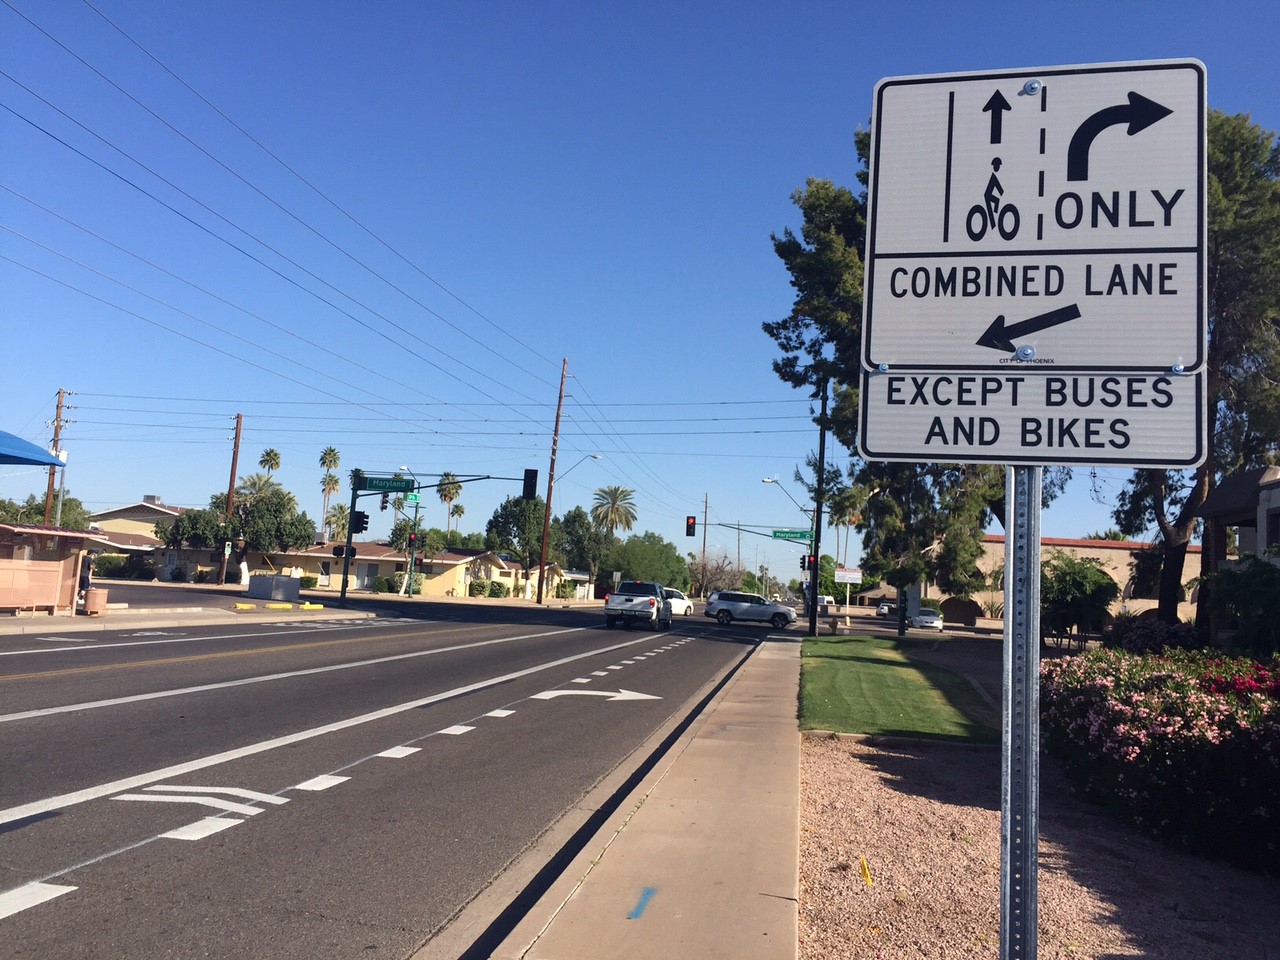 Street sign showing bike lane